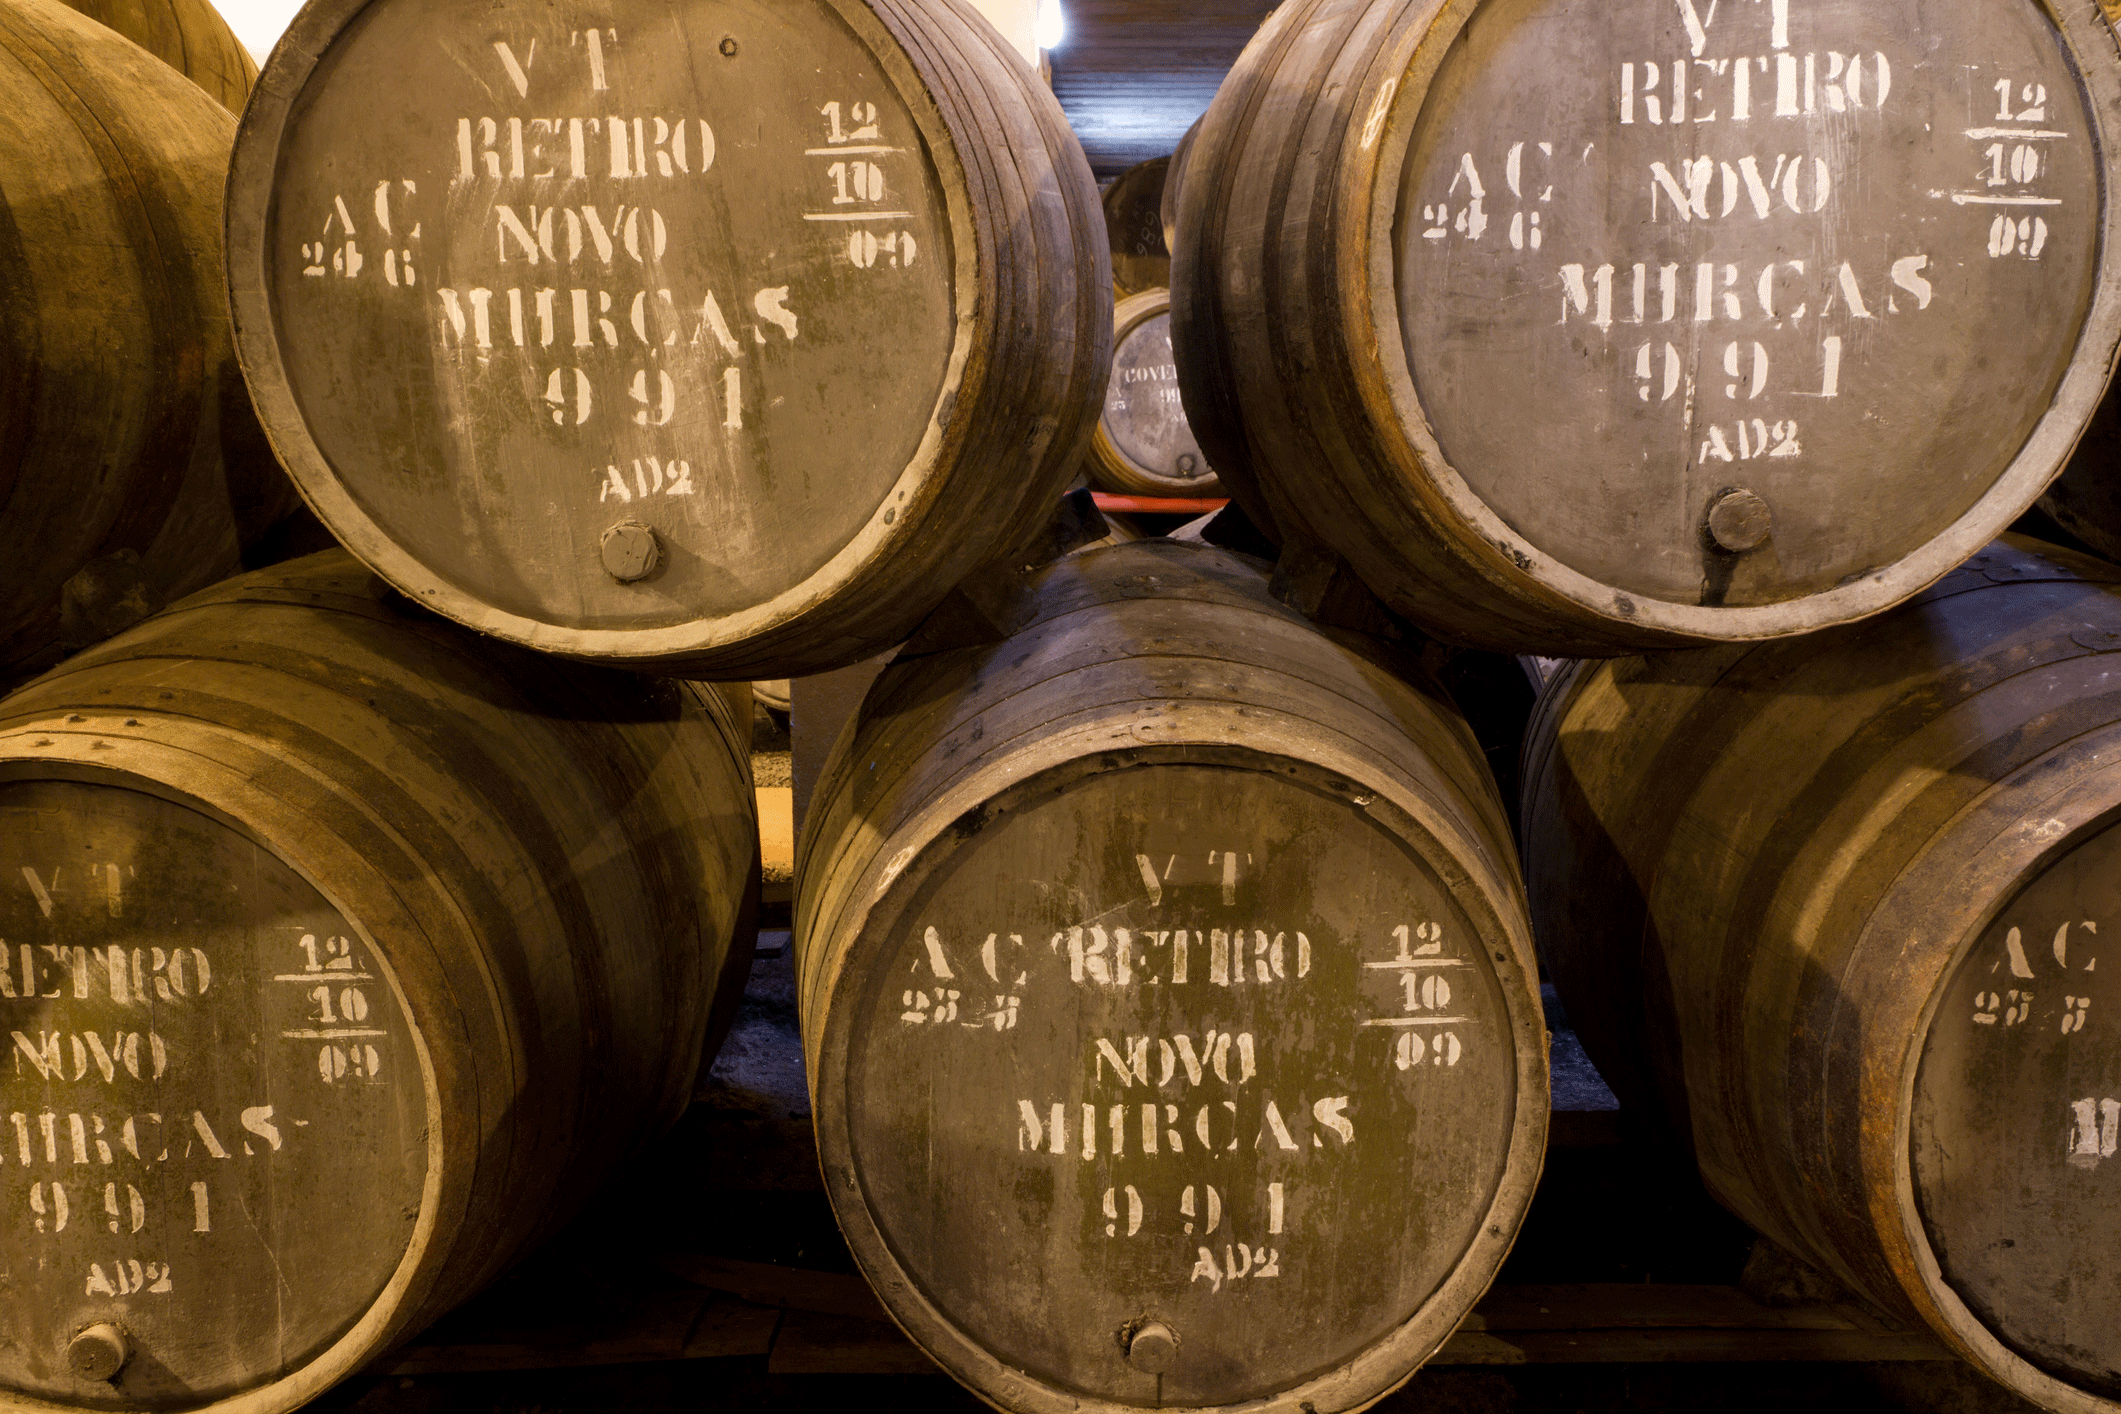 Port wine in Douro